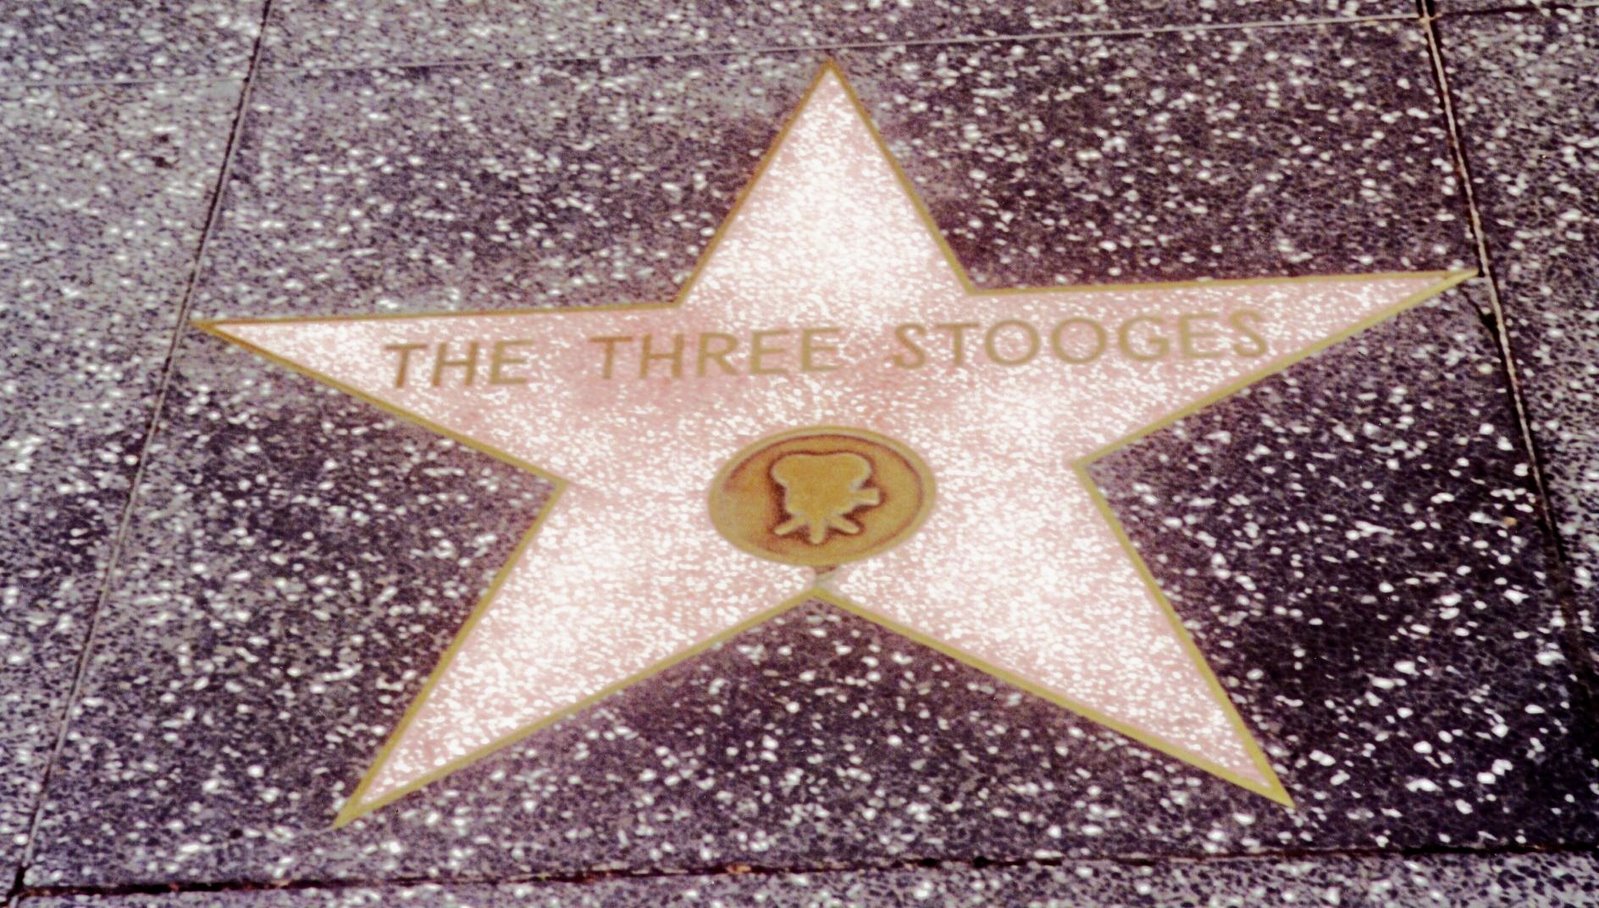 [1+-+stooge+star.JPG]